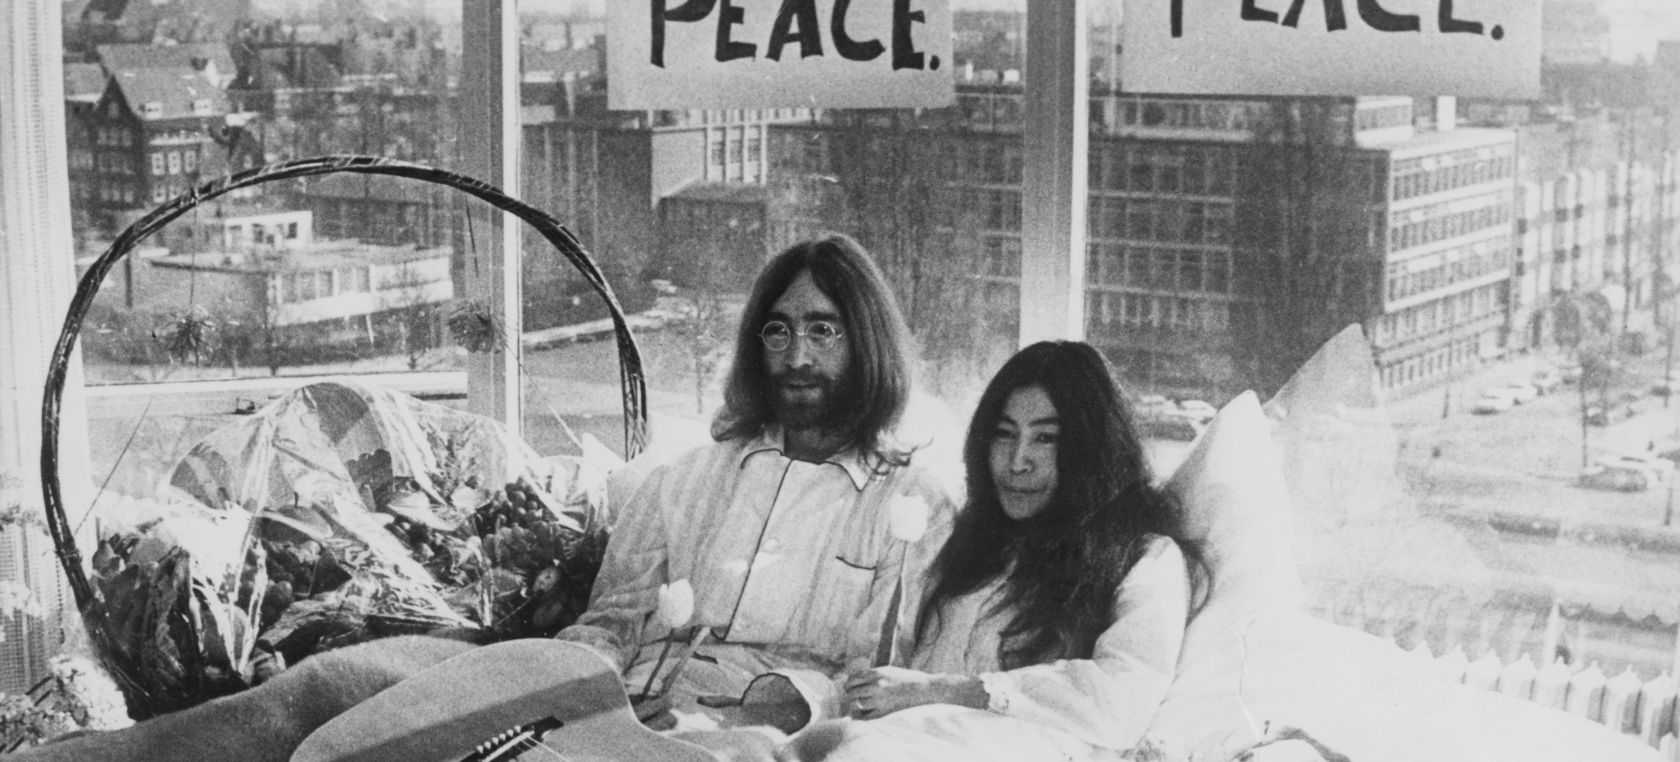 Así intentaron John Lennon y Yoko Ono parar la guerra en pijama desde la cama